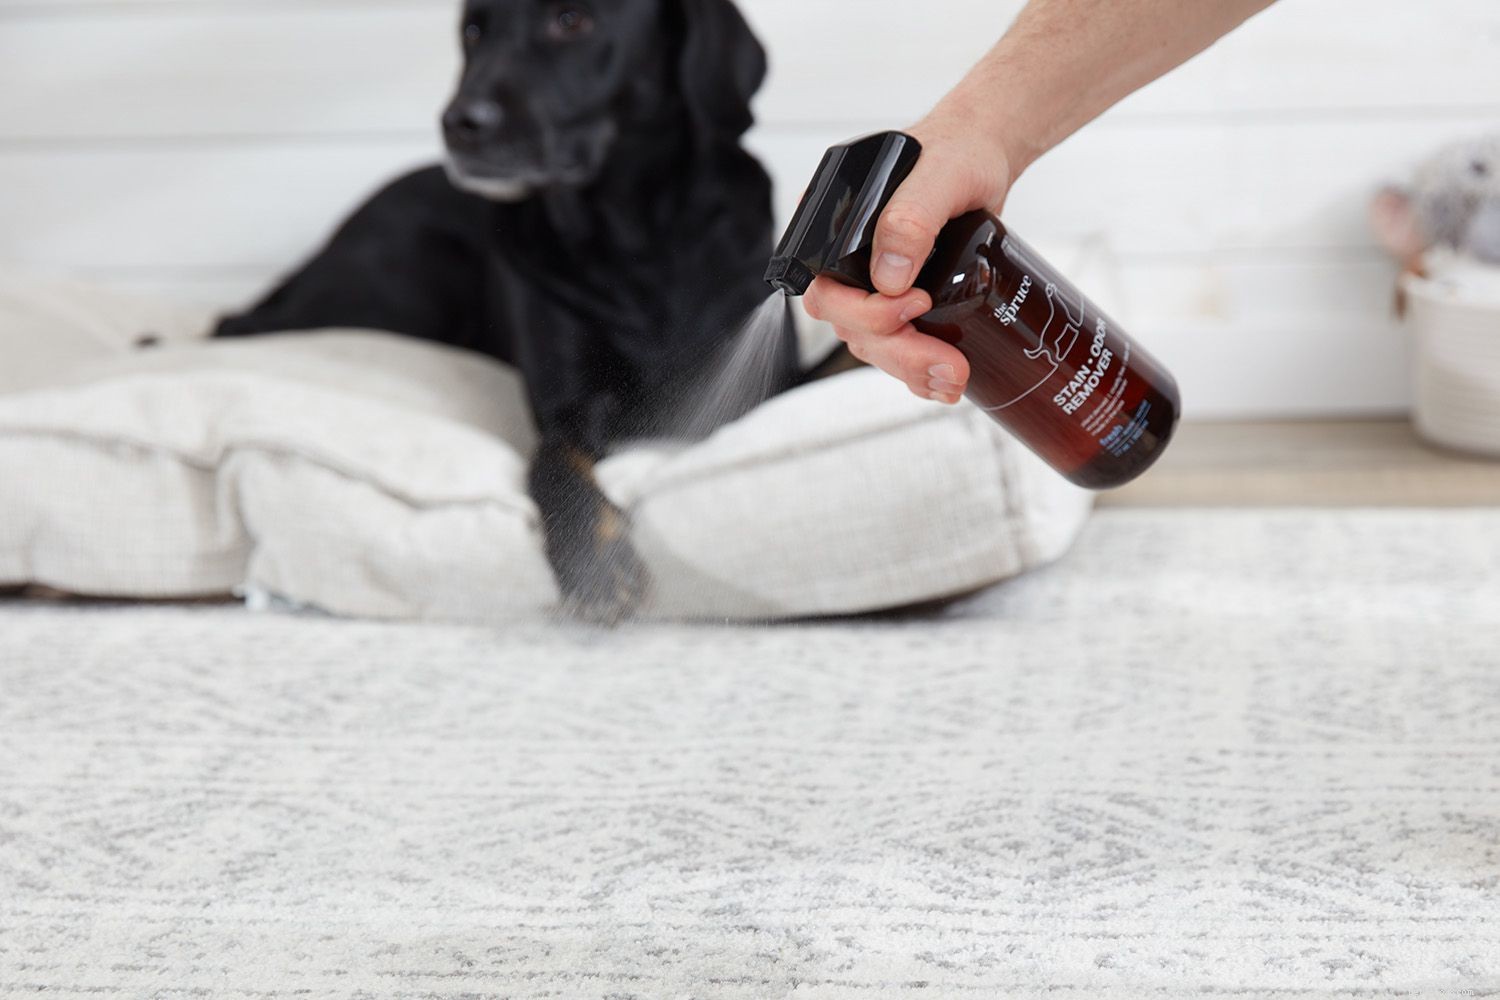 Как пользоваться средством для удаления пятен и запаха домашних животных